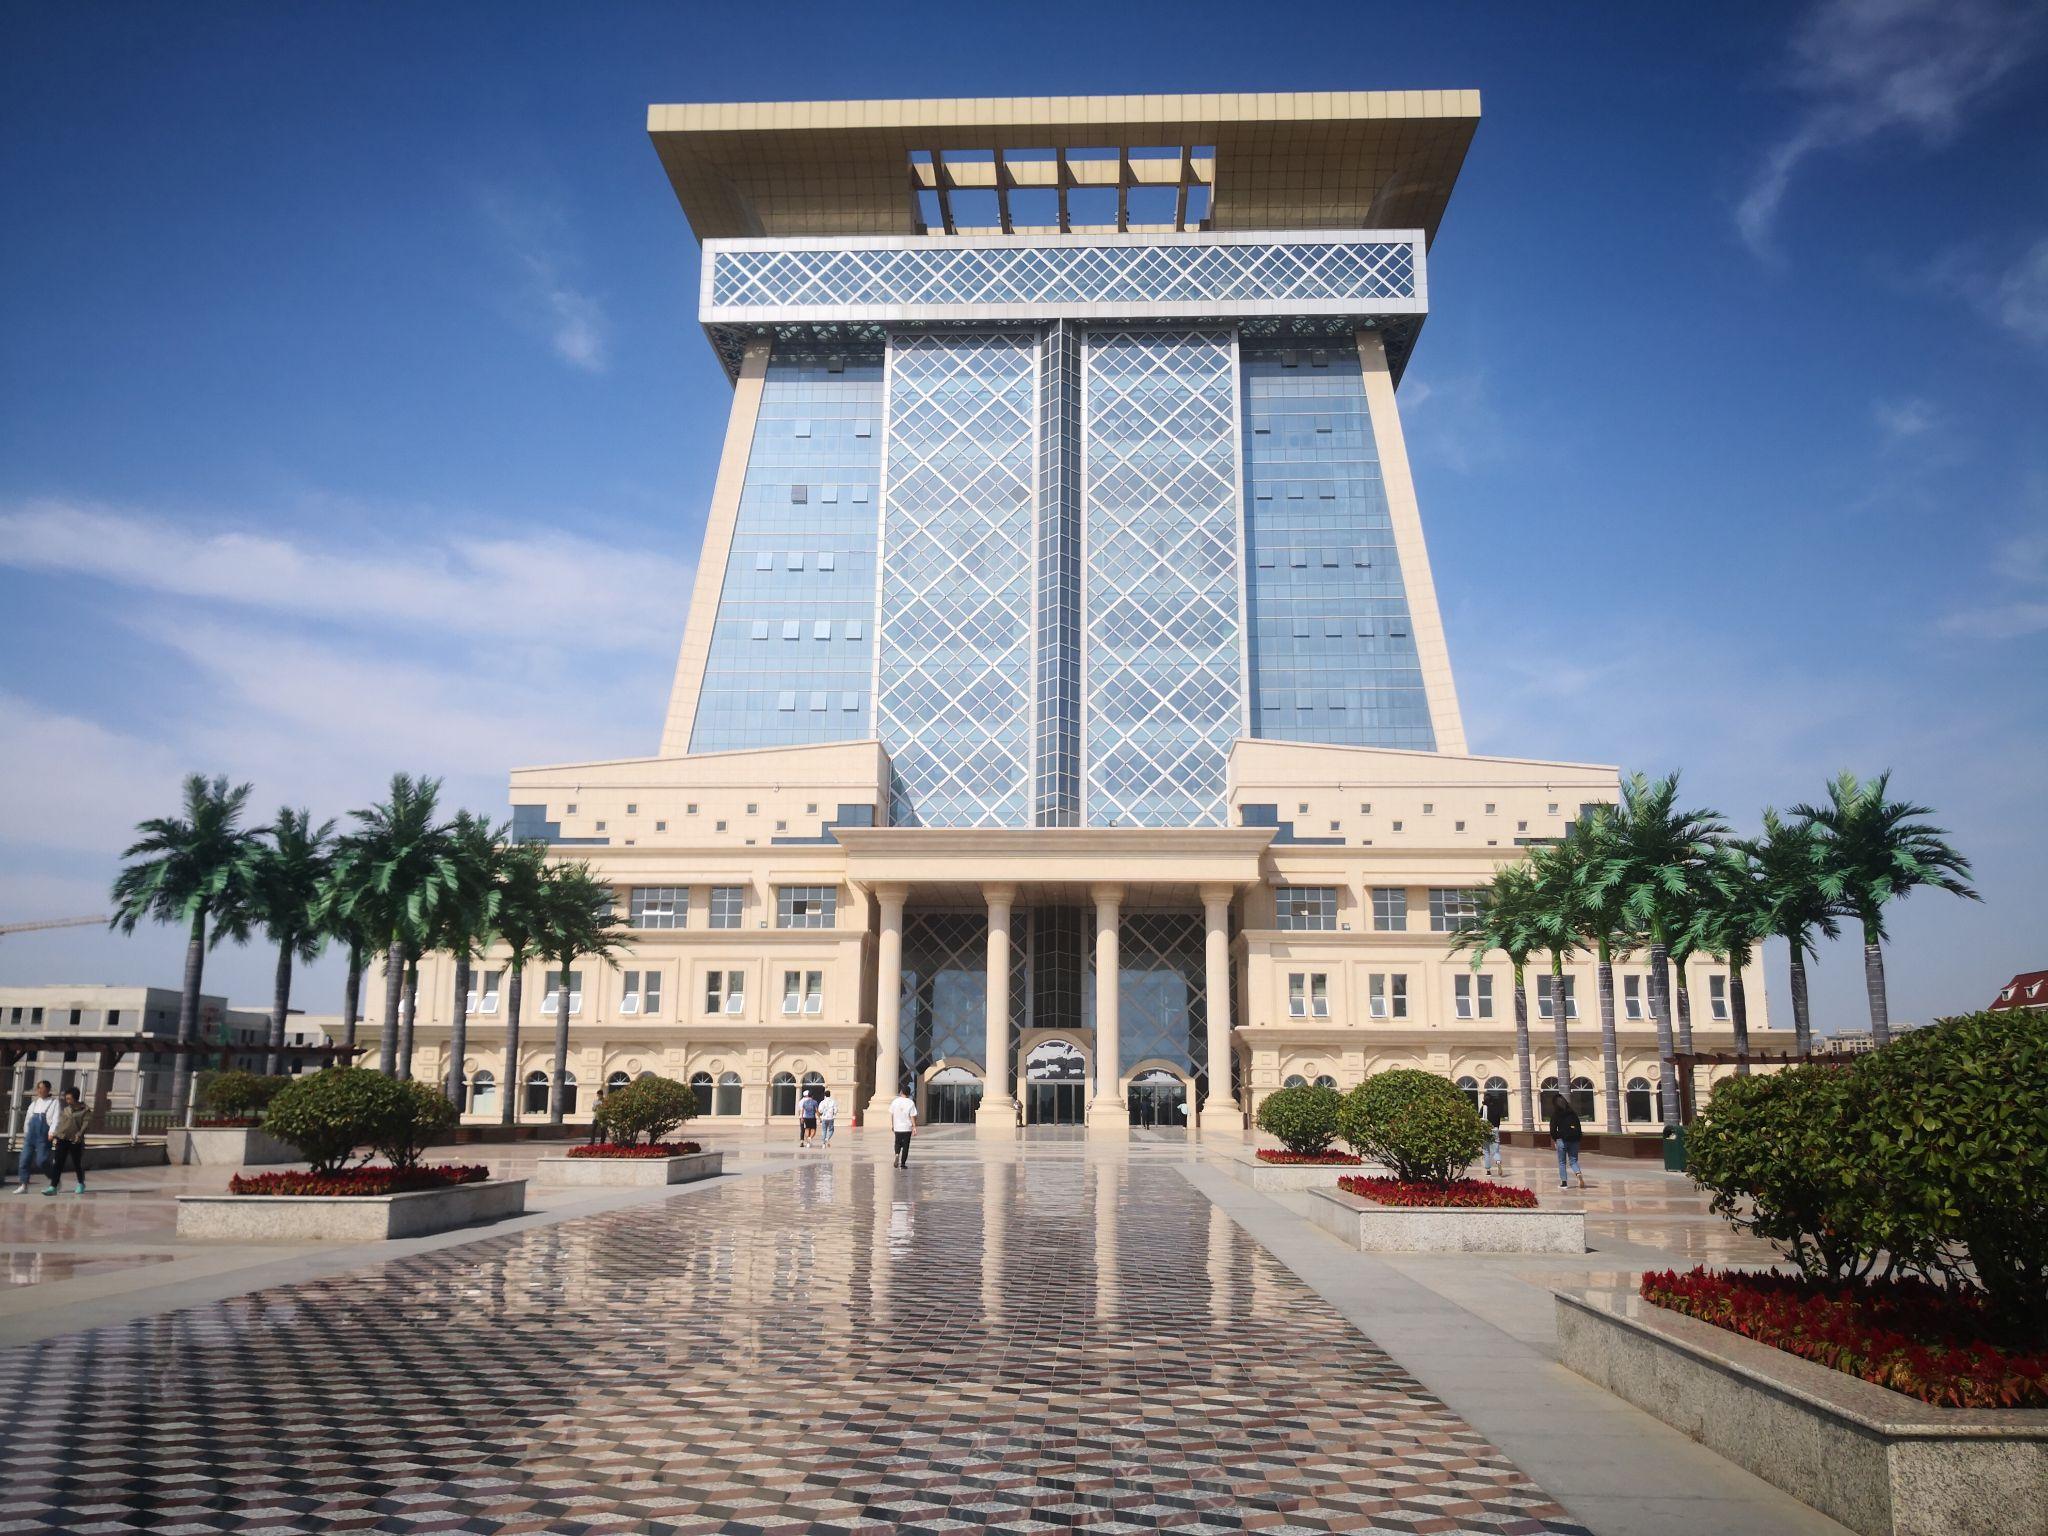 怎么看待郑州大学西亚斯国际学院建设豪华图书馆